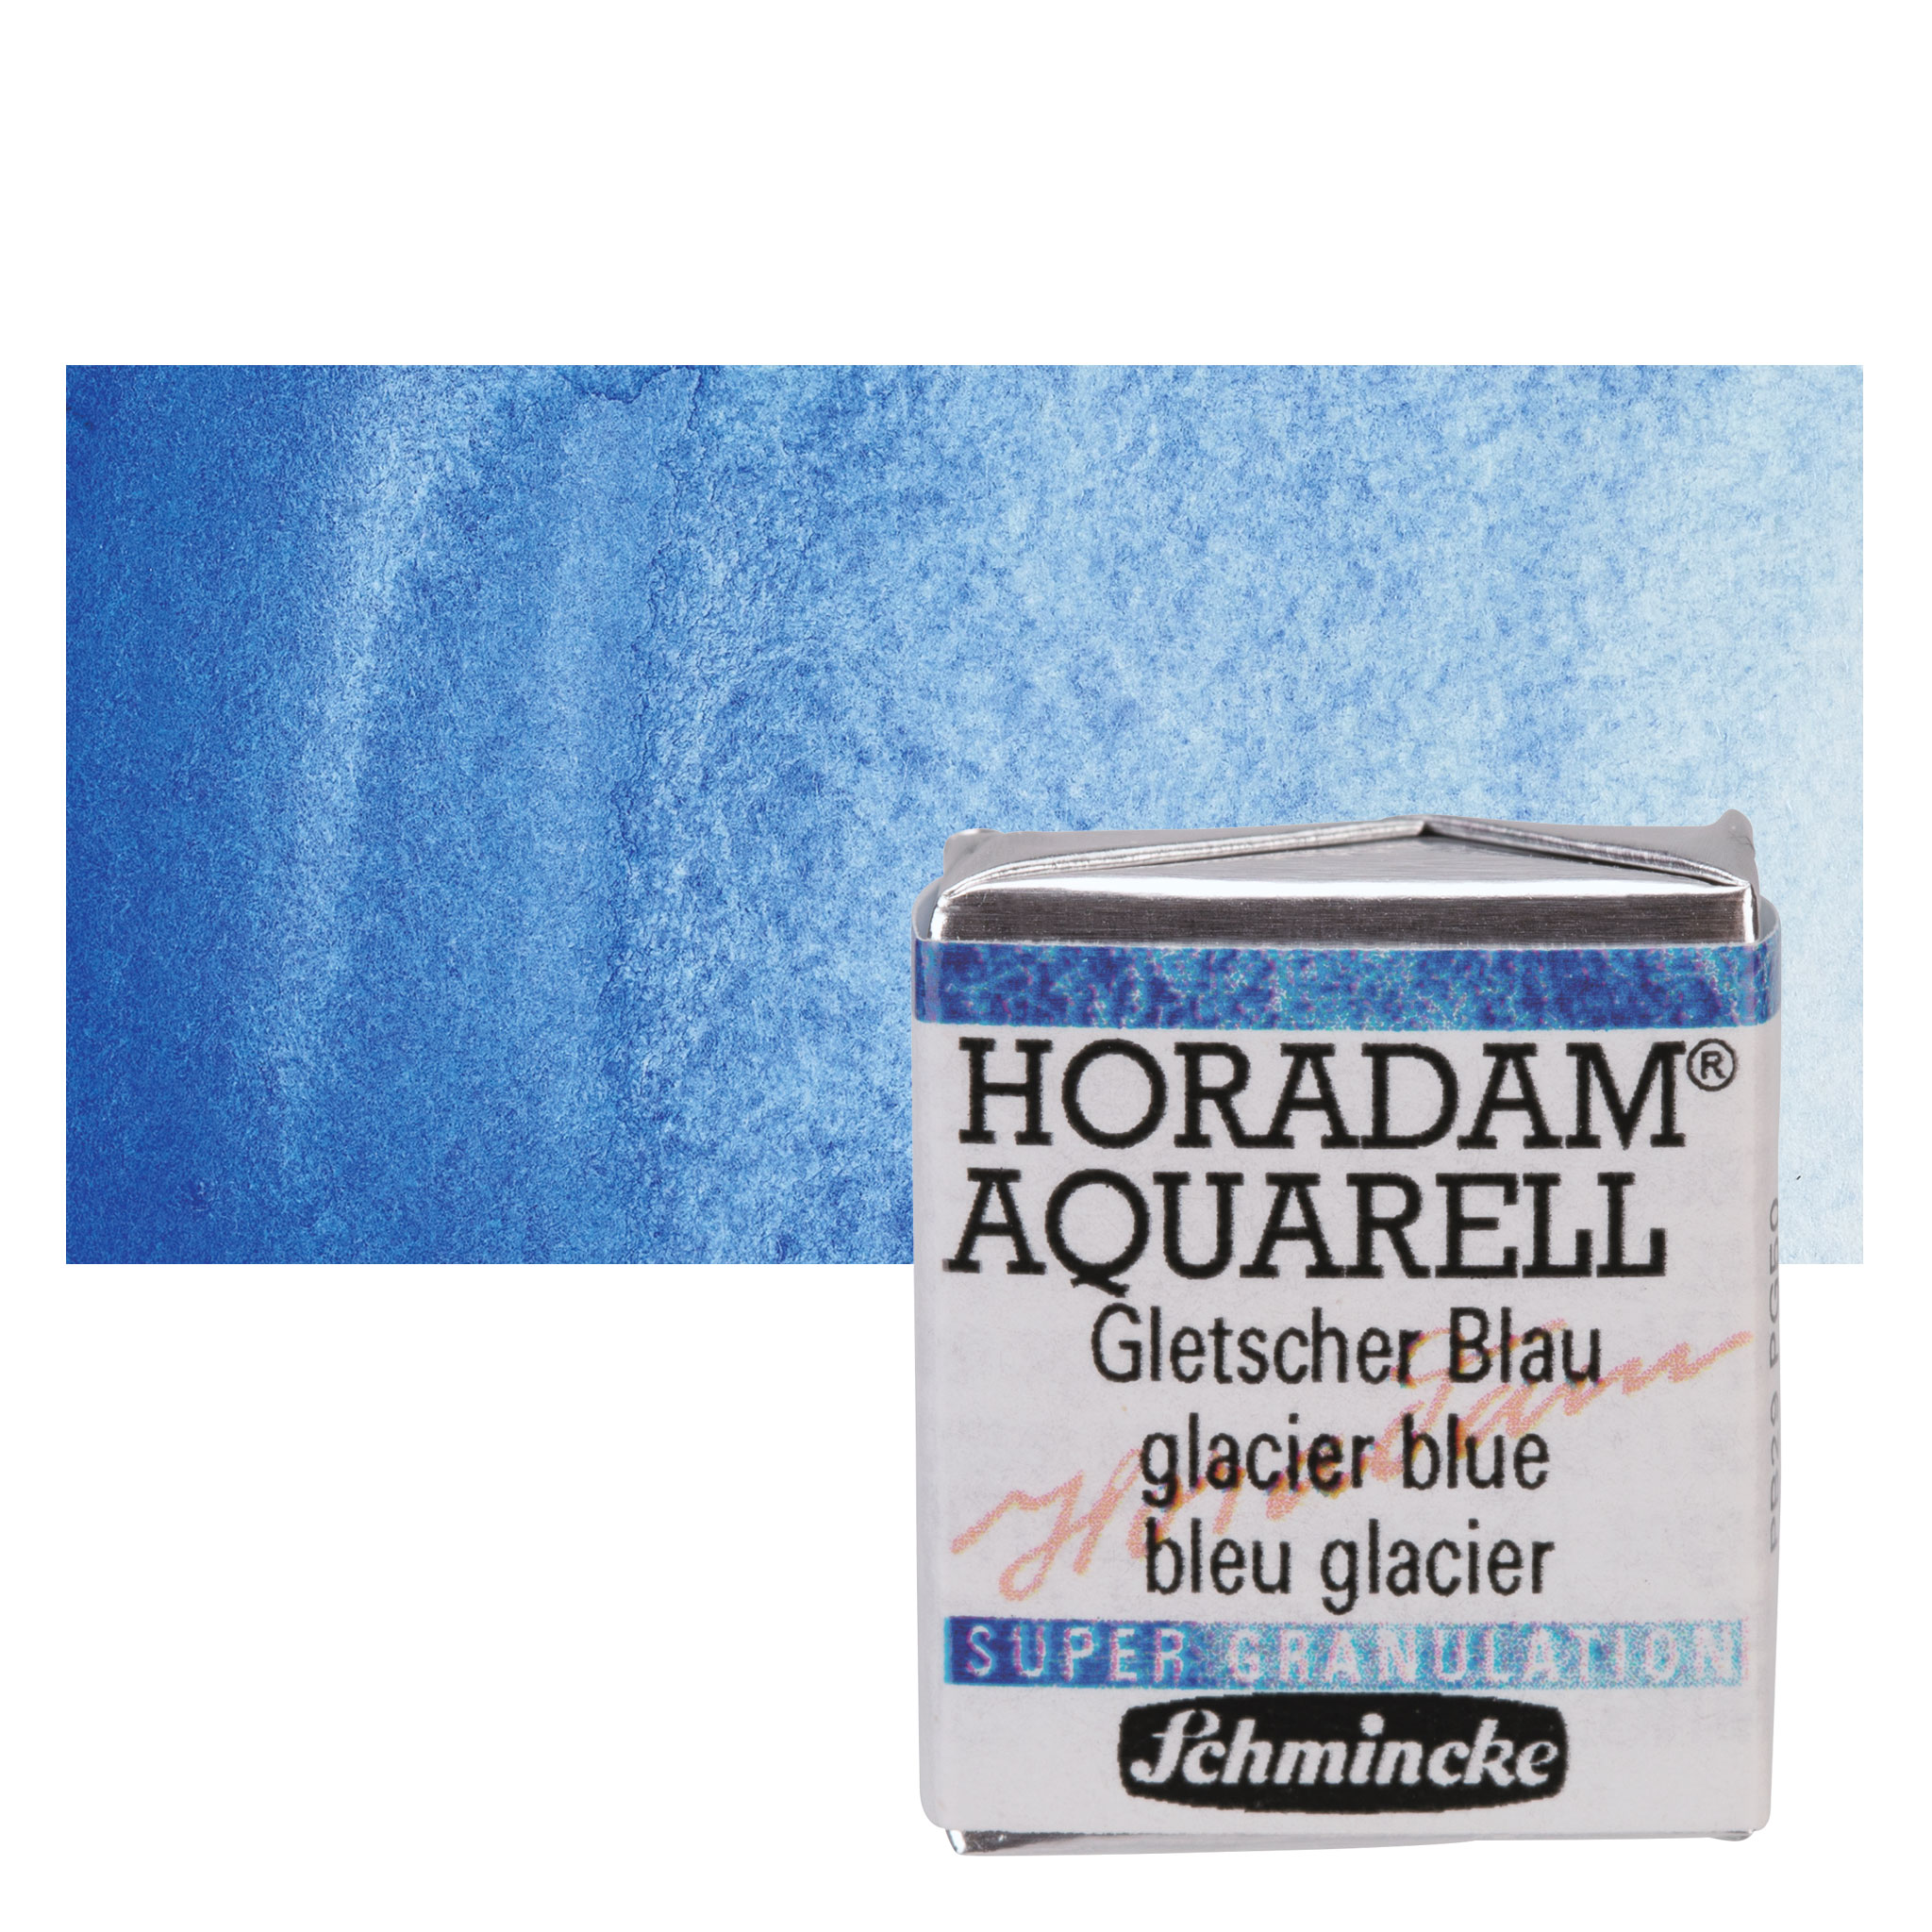 Bleu Glacier - new color?